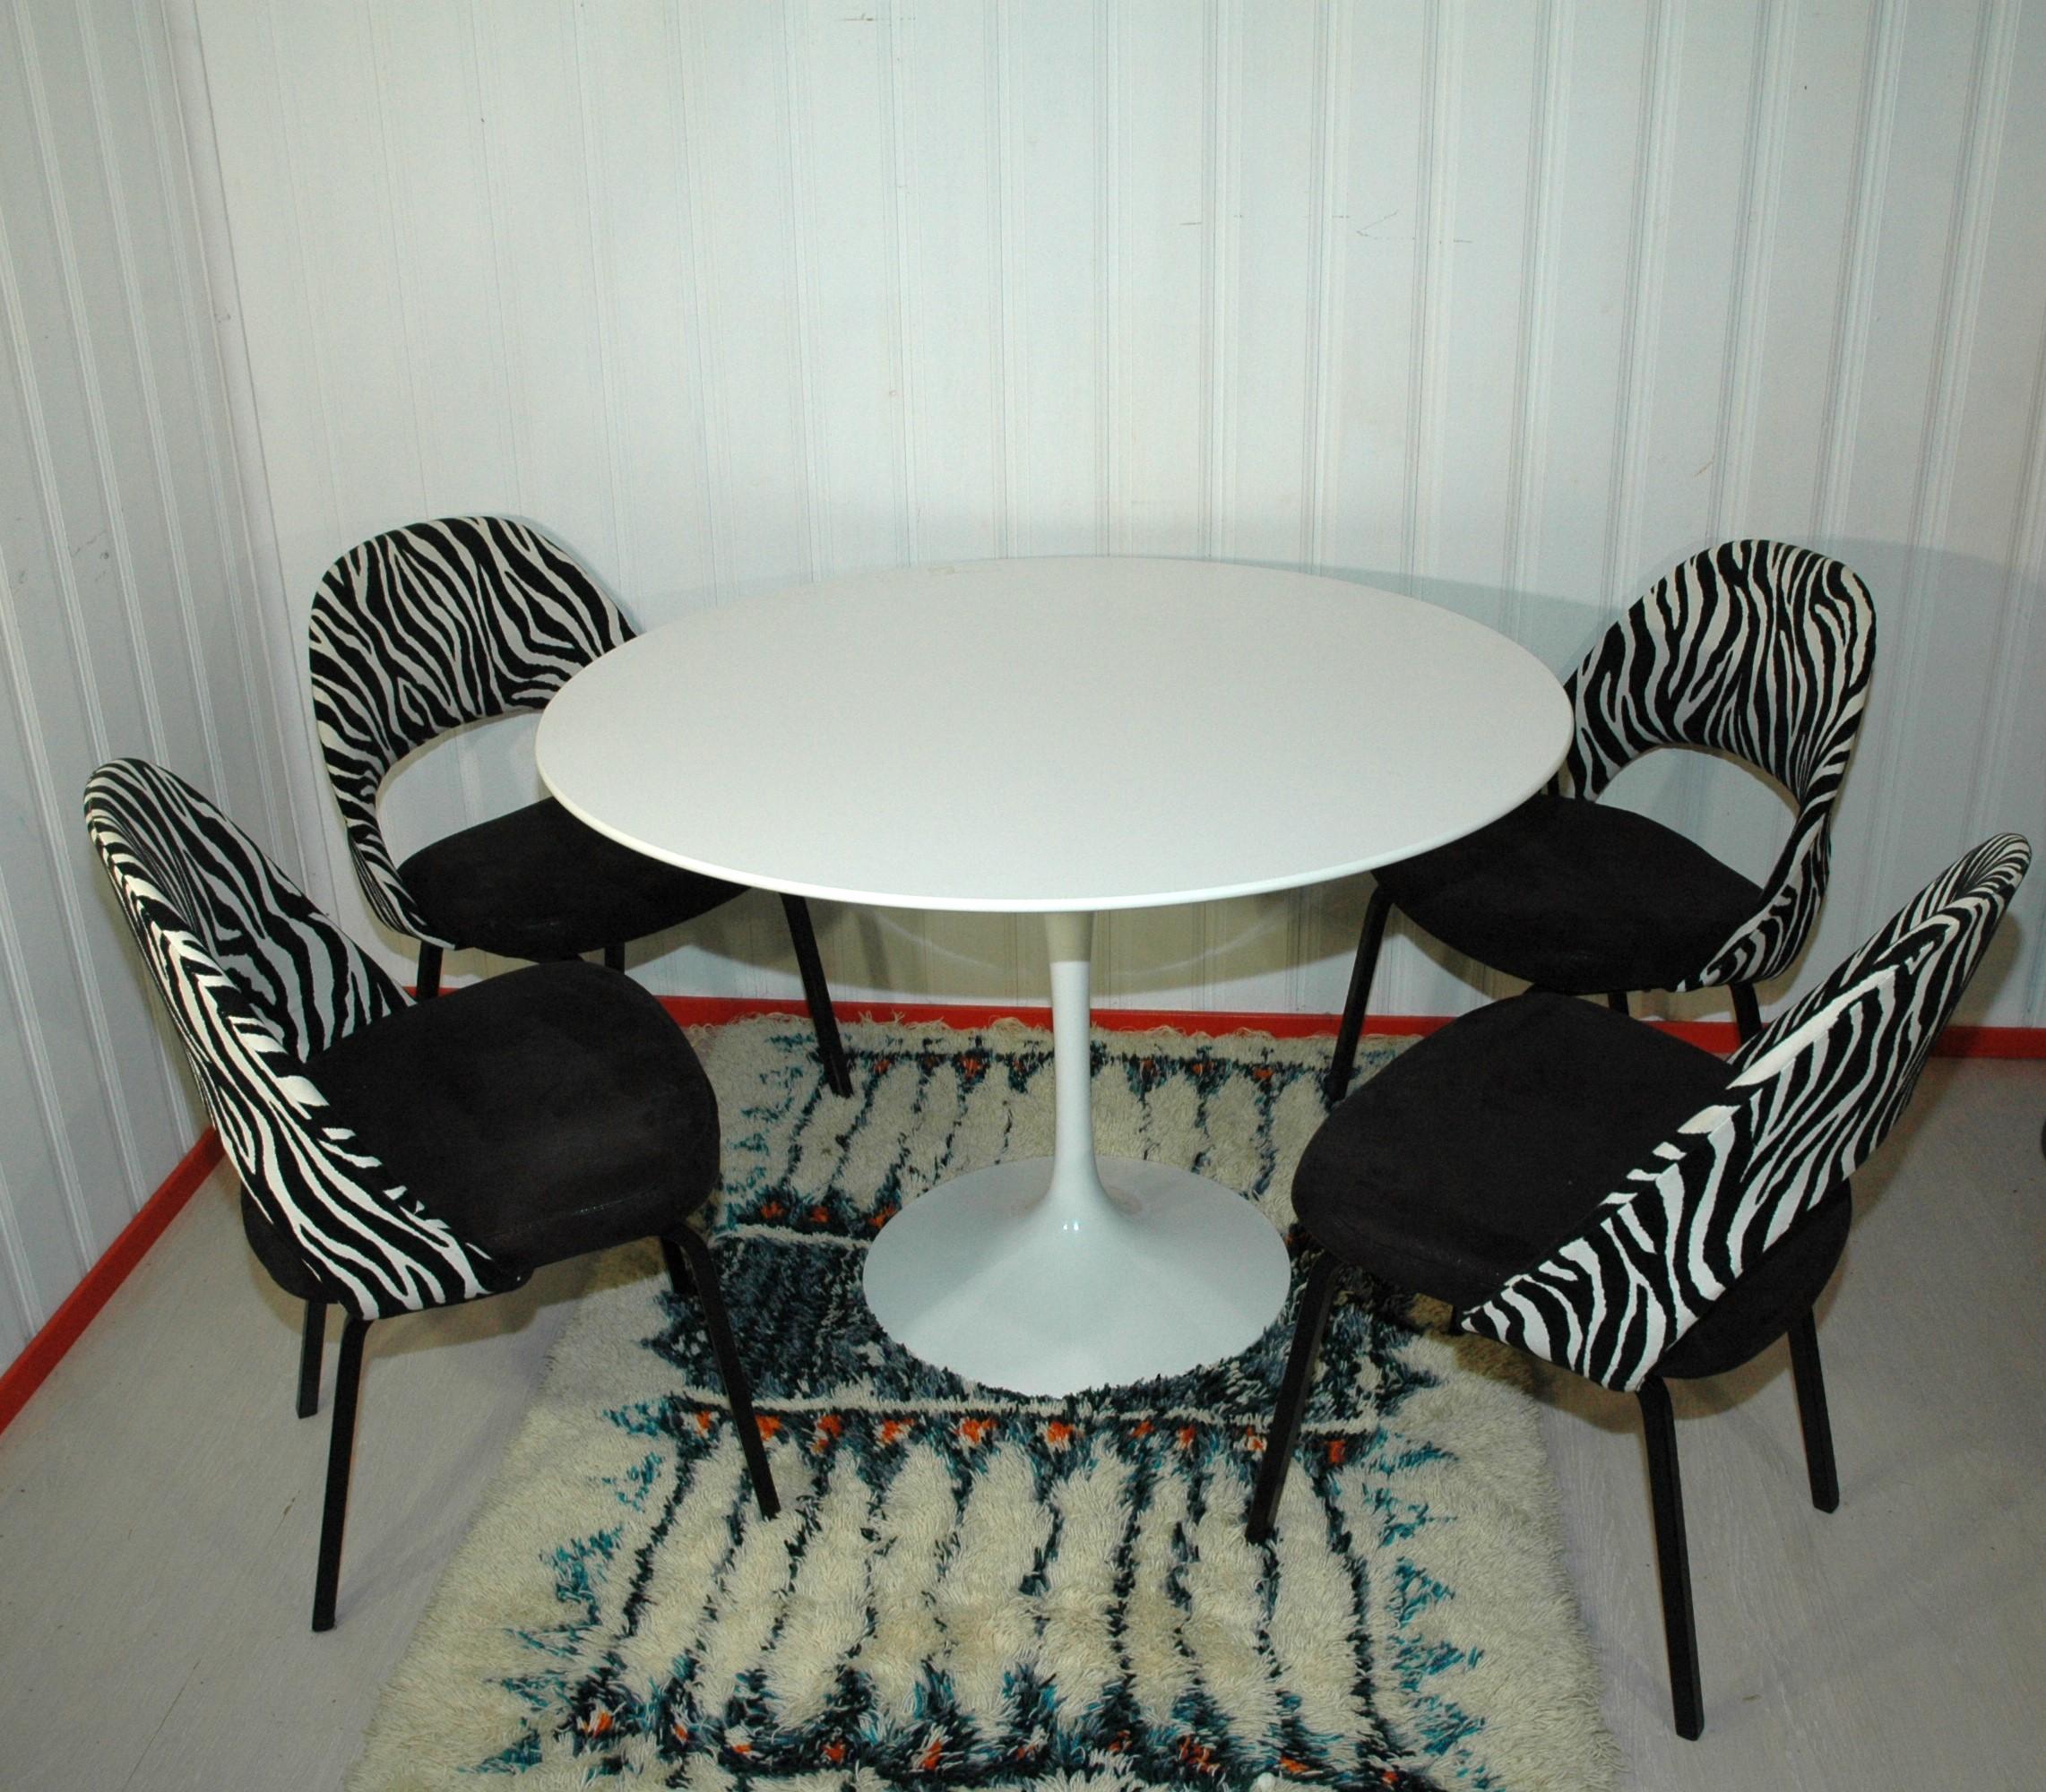 
Eero Saarinen a peut-être réussi à concevoir l'une des meilleures, des plus belles et des plus confortables chaises que vous posséderez.

L'architecte et designer de meubles finno-américain Eero Saarinen partait du principe que la fonction donnait